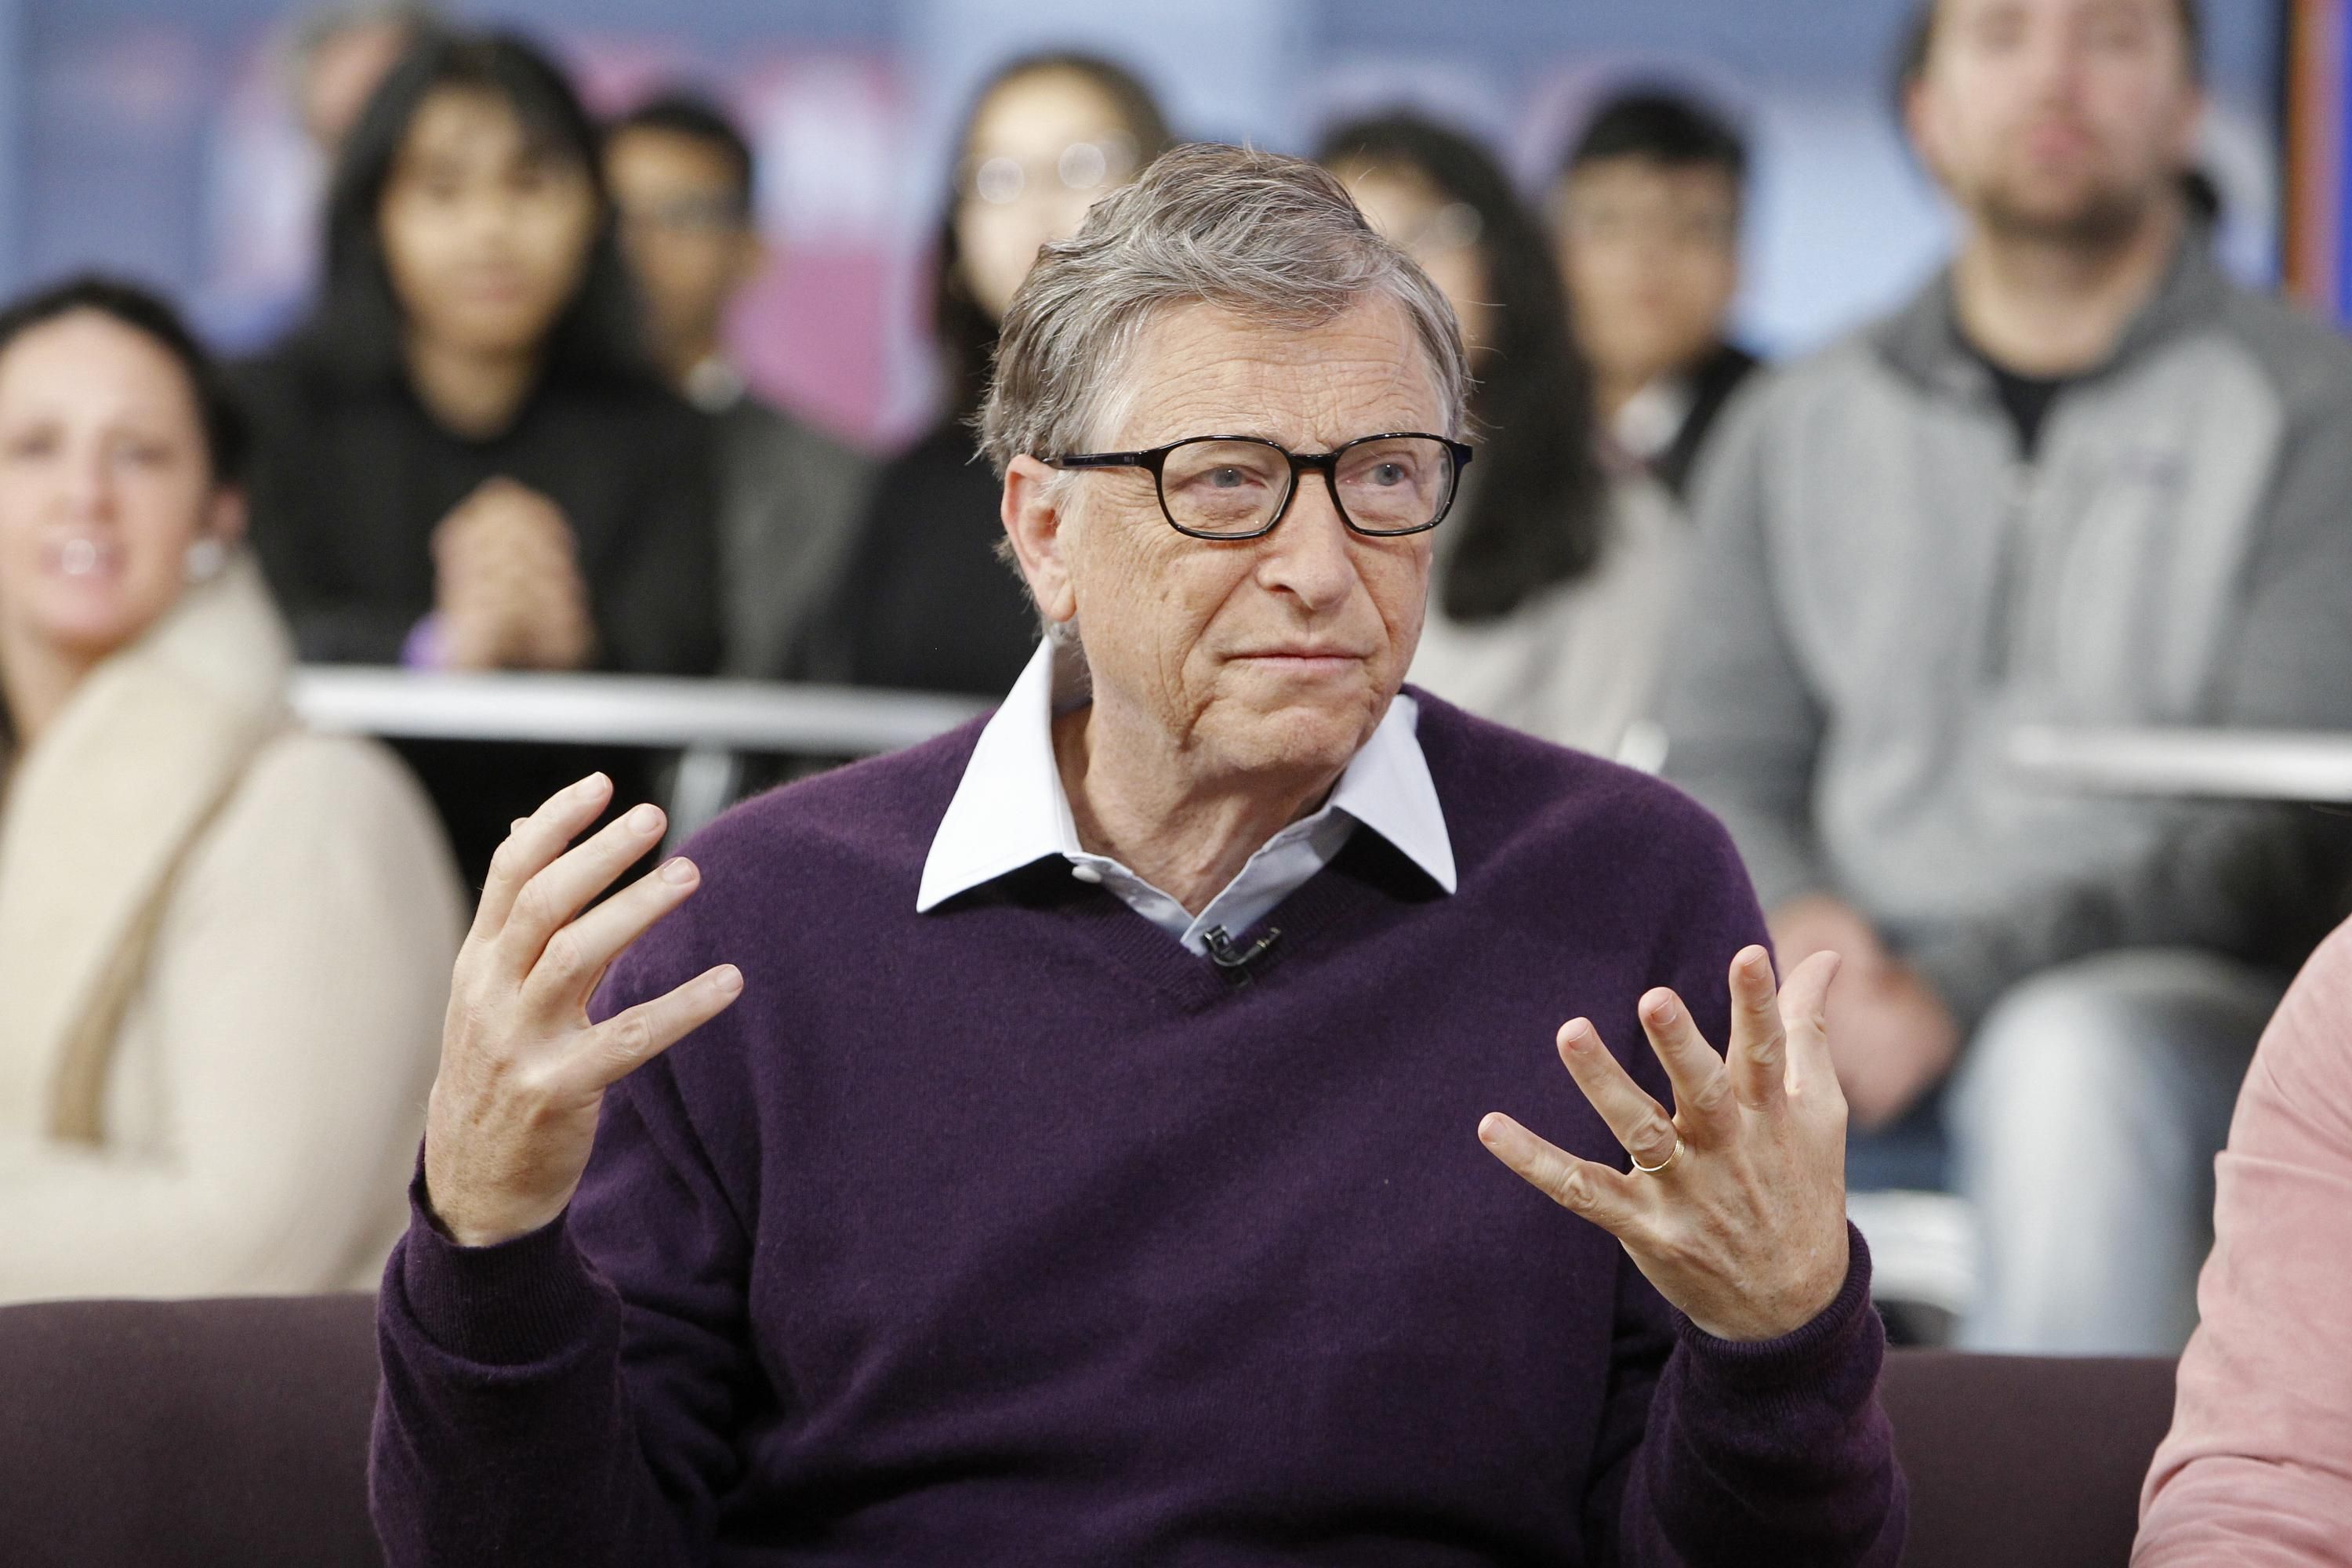 Они как нудисты: Билл Гейтс резко высказался об антимасочниках